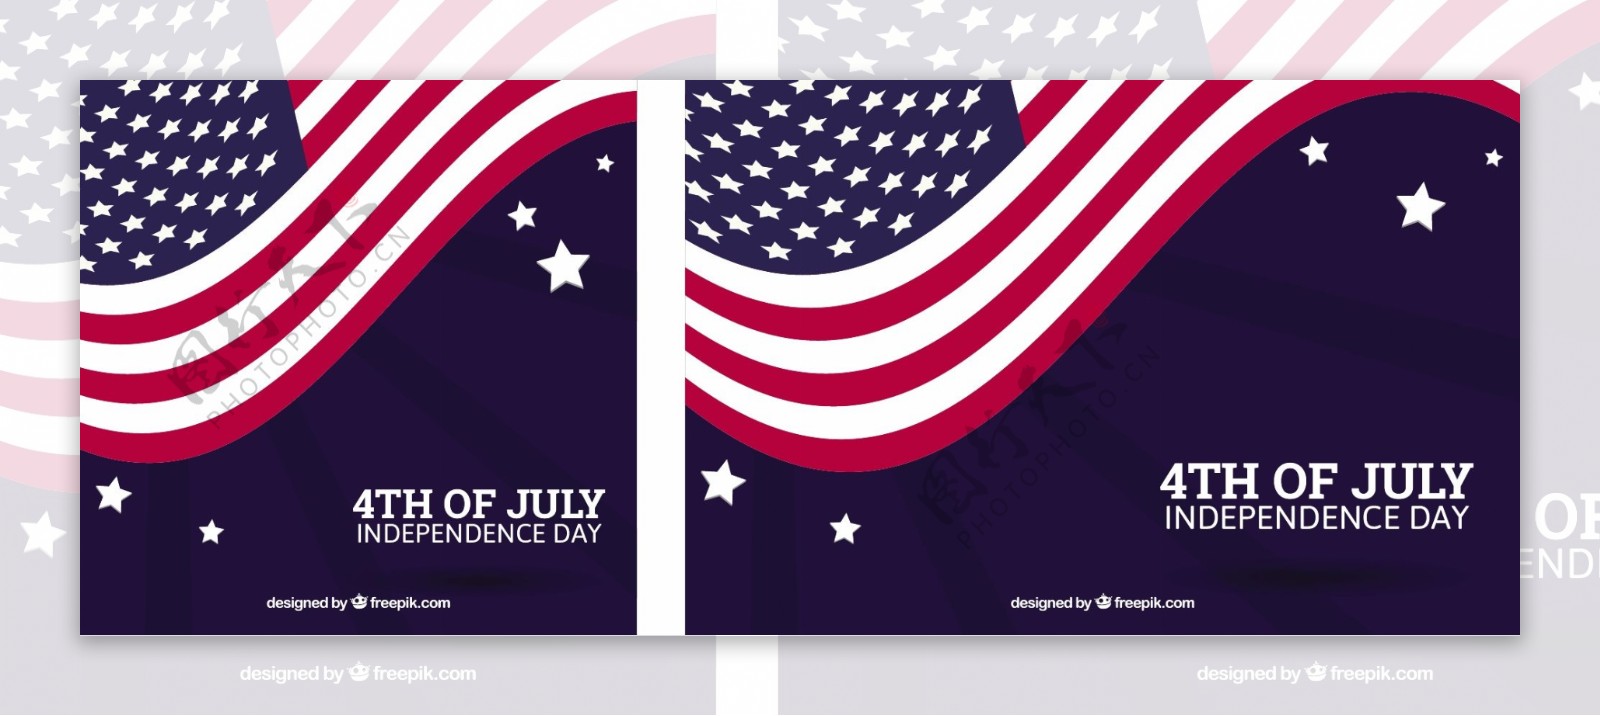 独立日背景与波浪美国国旗